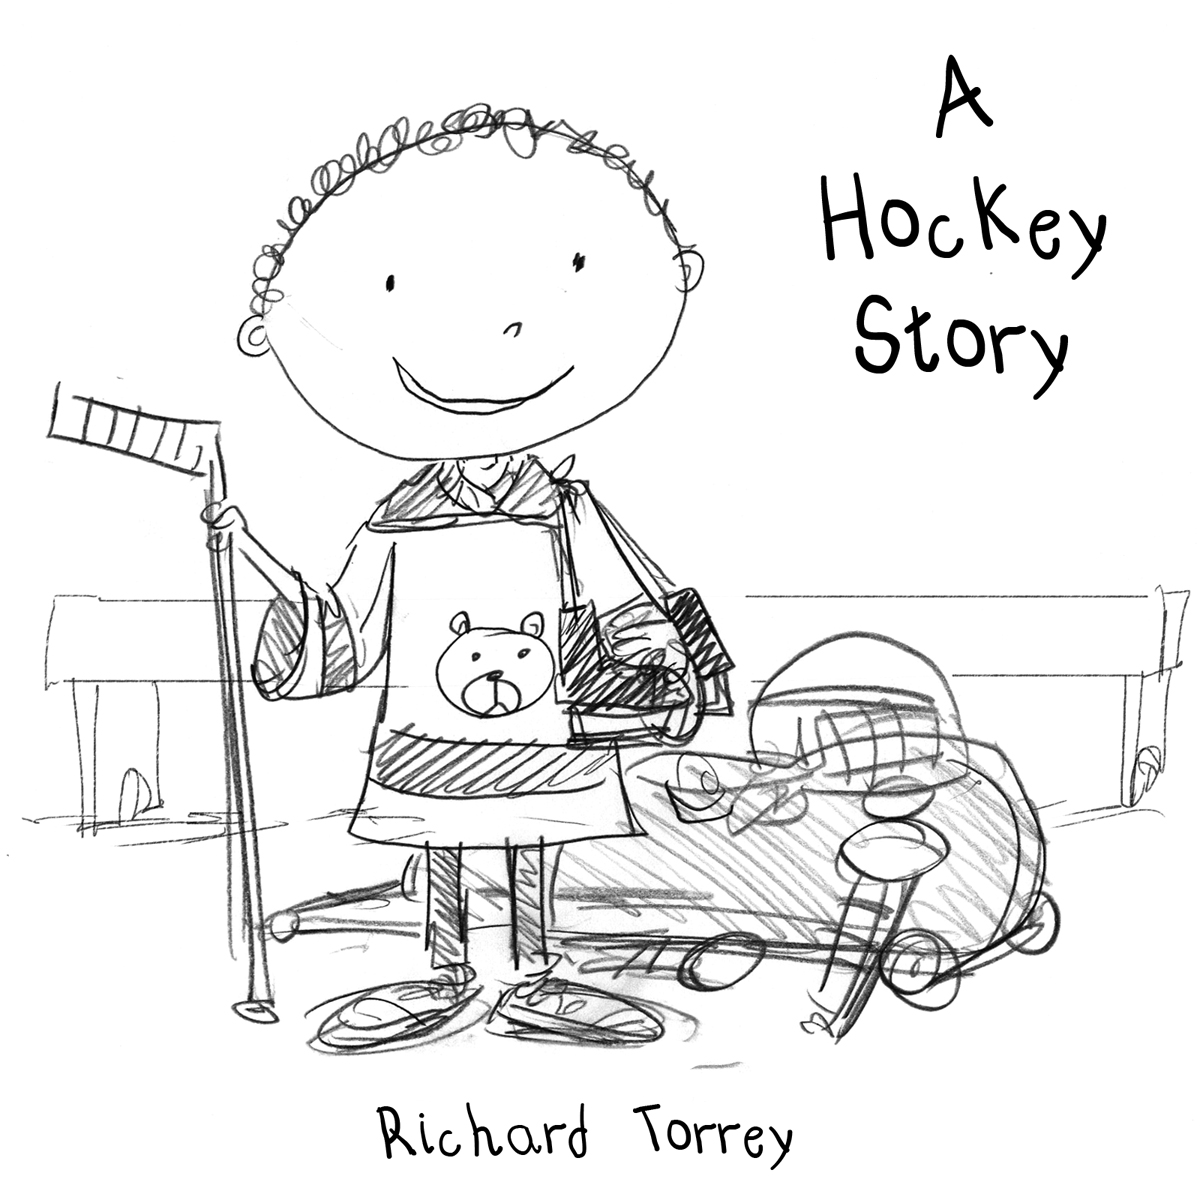 Hockey Story cover sketch 2